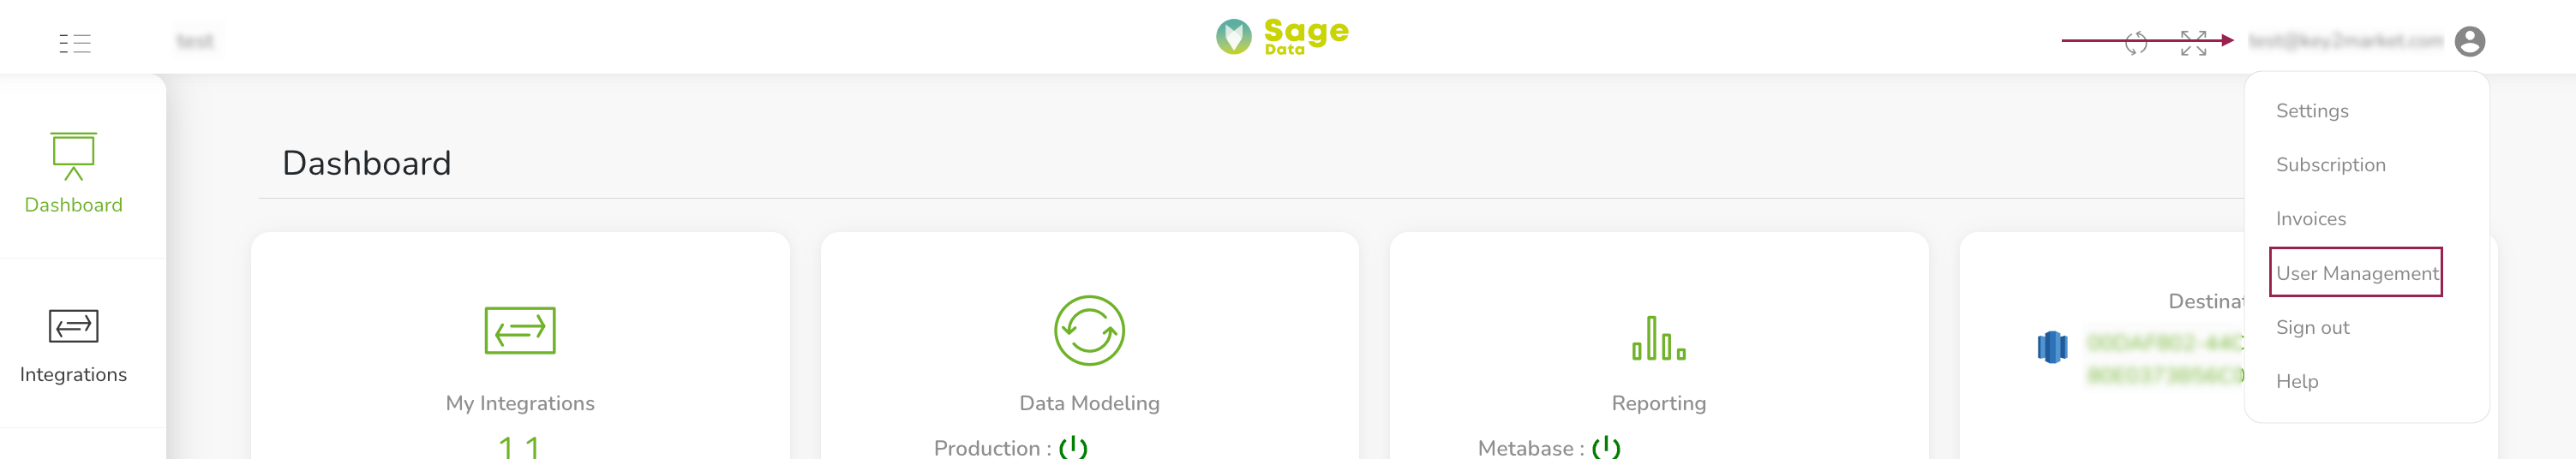 SageData User Management